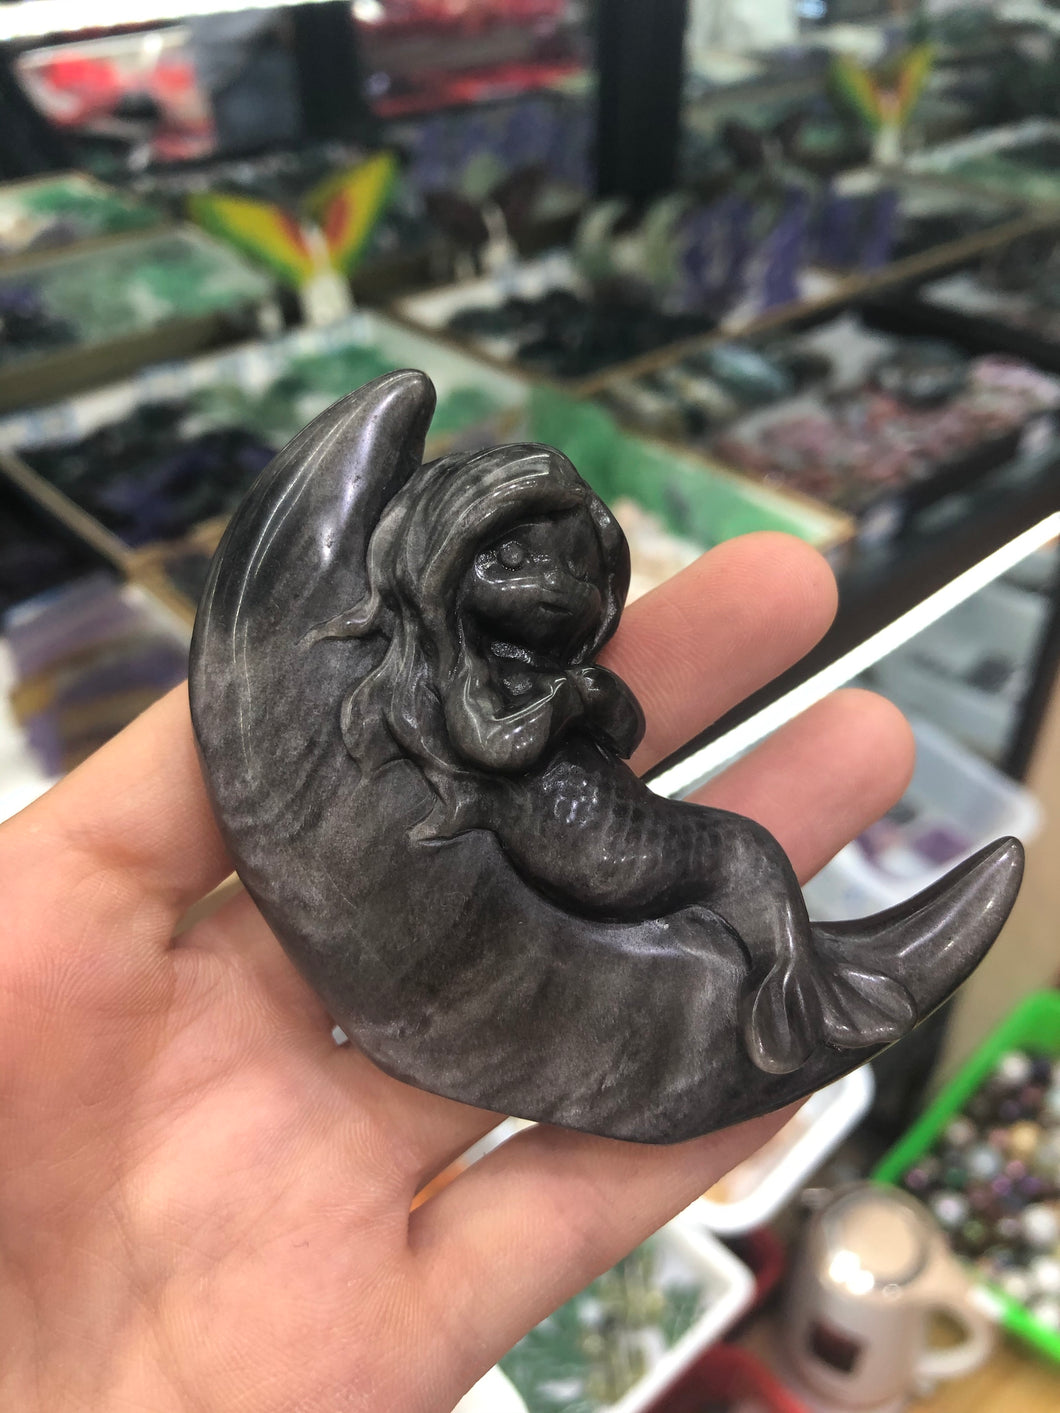 Silver sheen obsidian mermaid